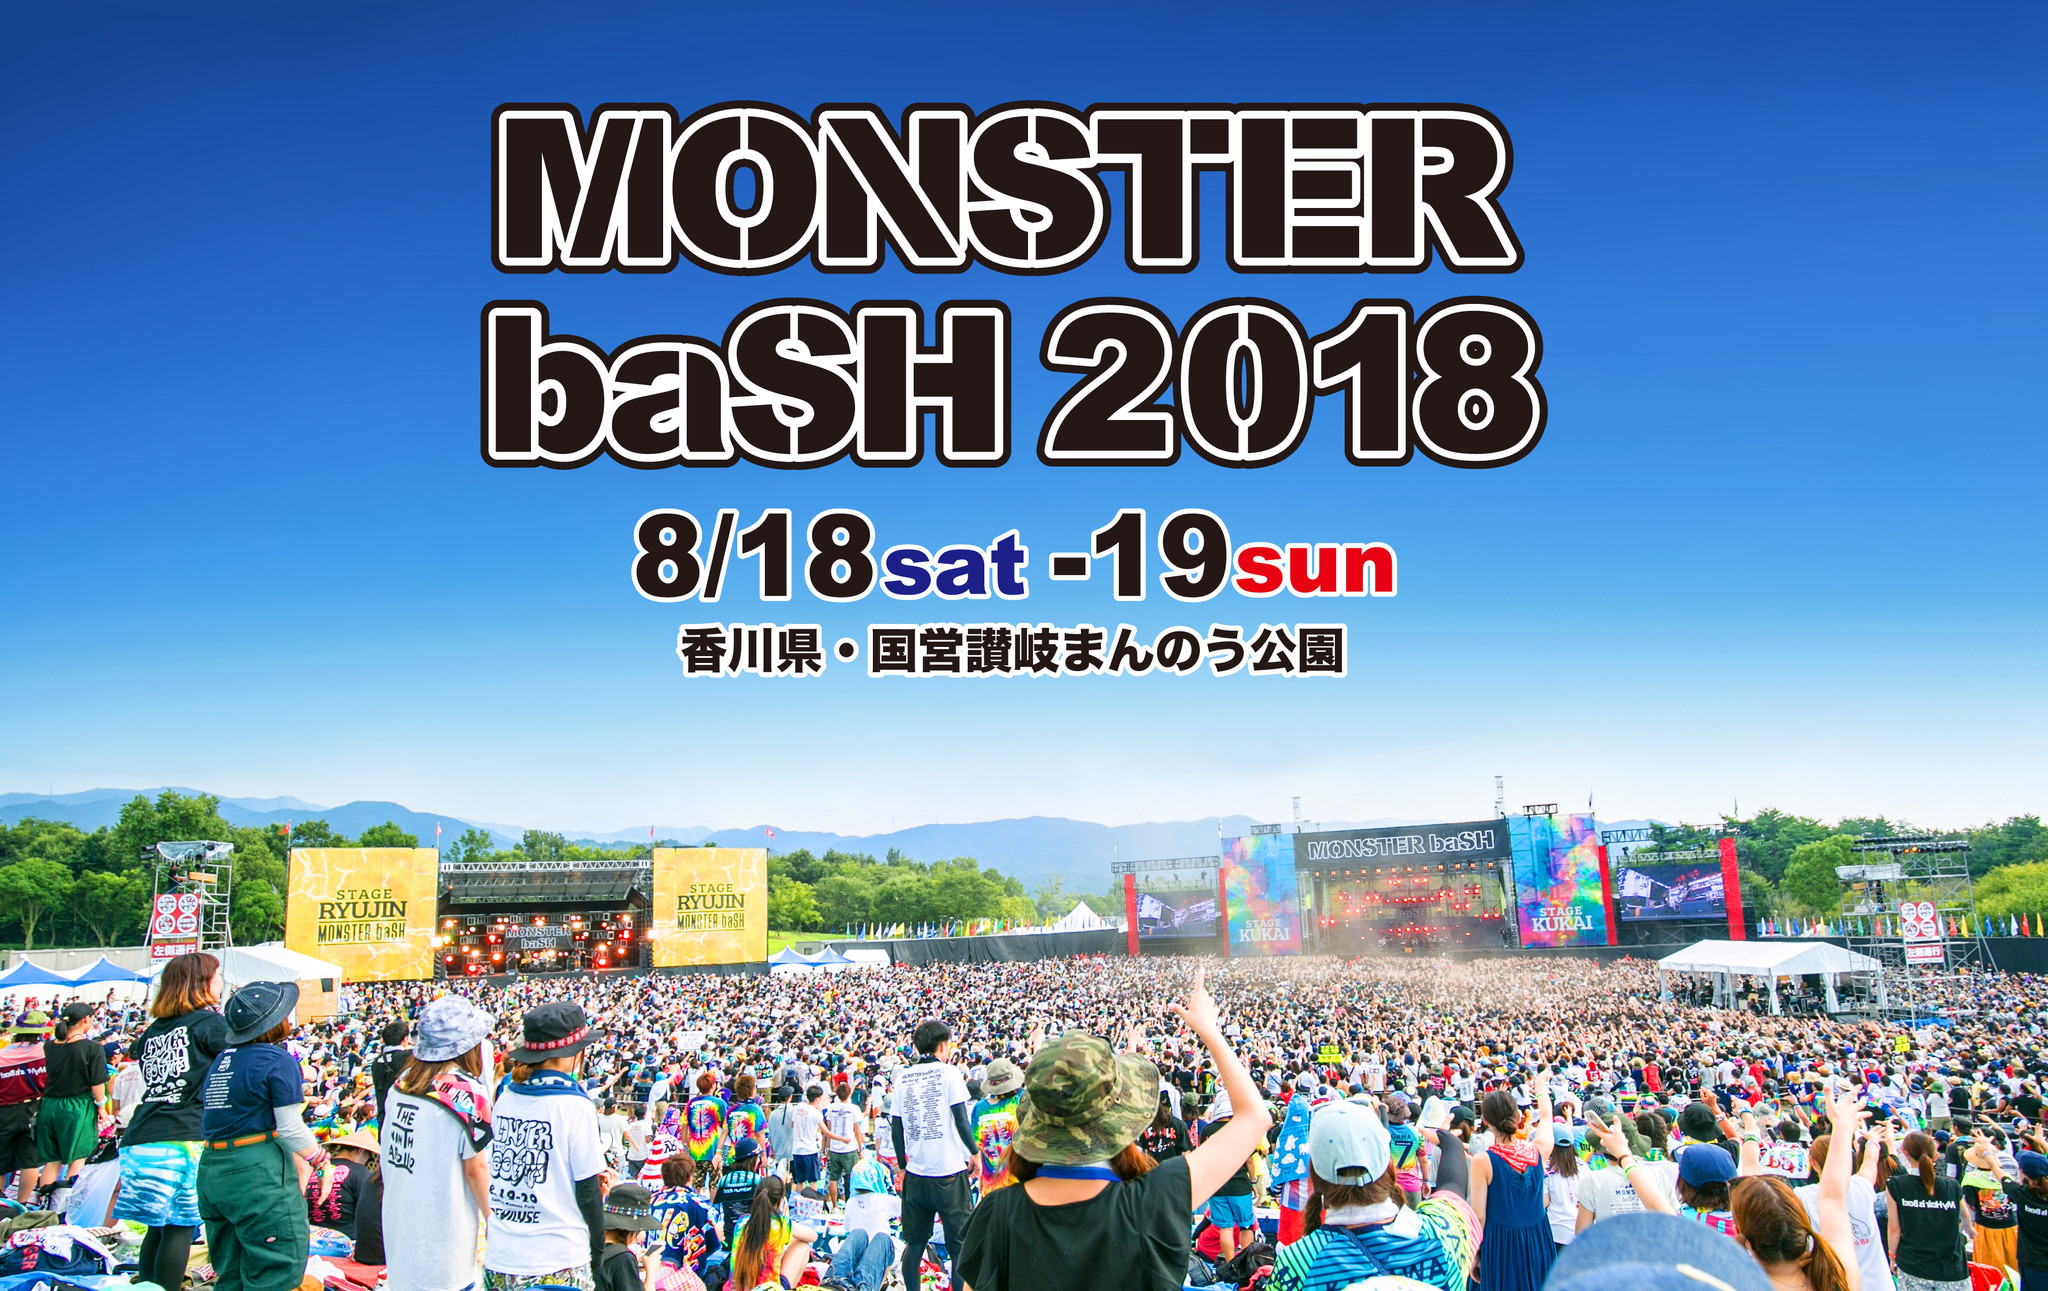 中四国最大級の野外フェス Monster Bash 18 チケットプレゼントキャンペーンを四国 岡山 広島エリアでスタート カルチュア コンビニエンス クラブ株式会社のプレスリリース